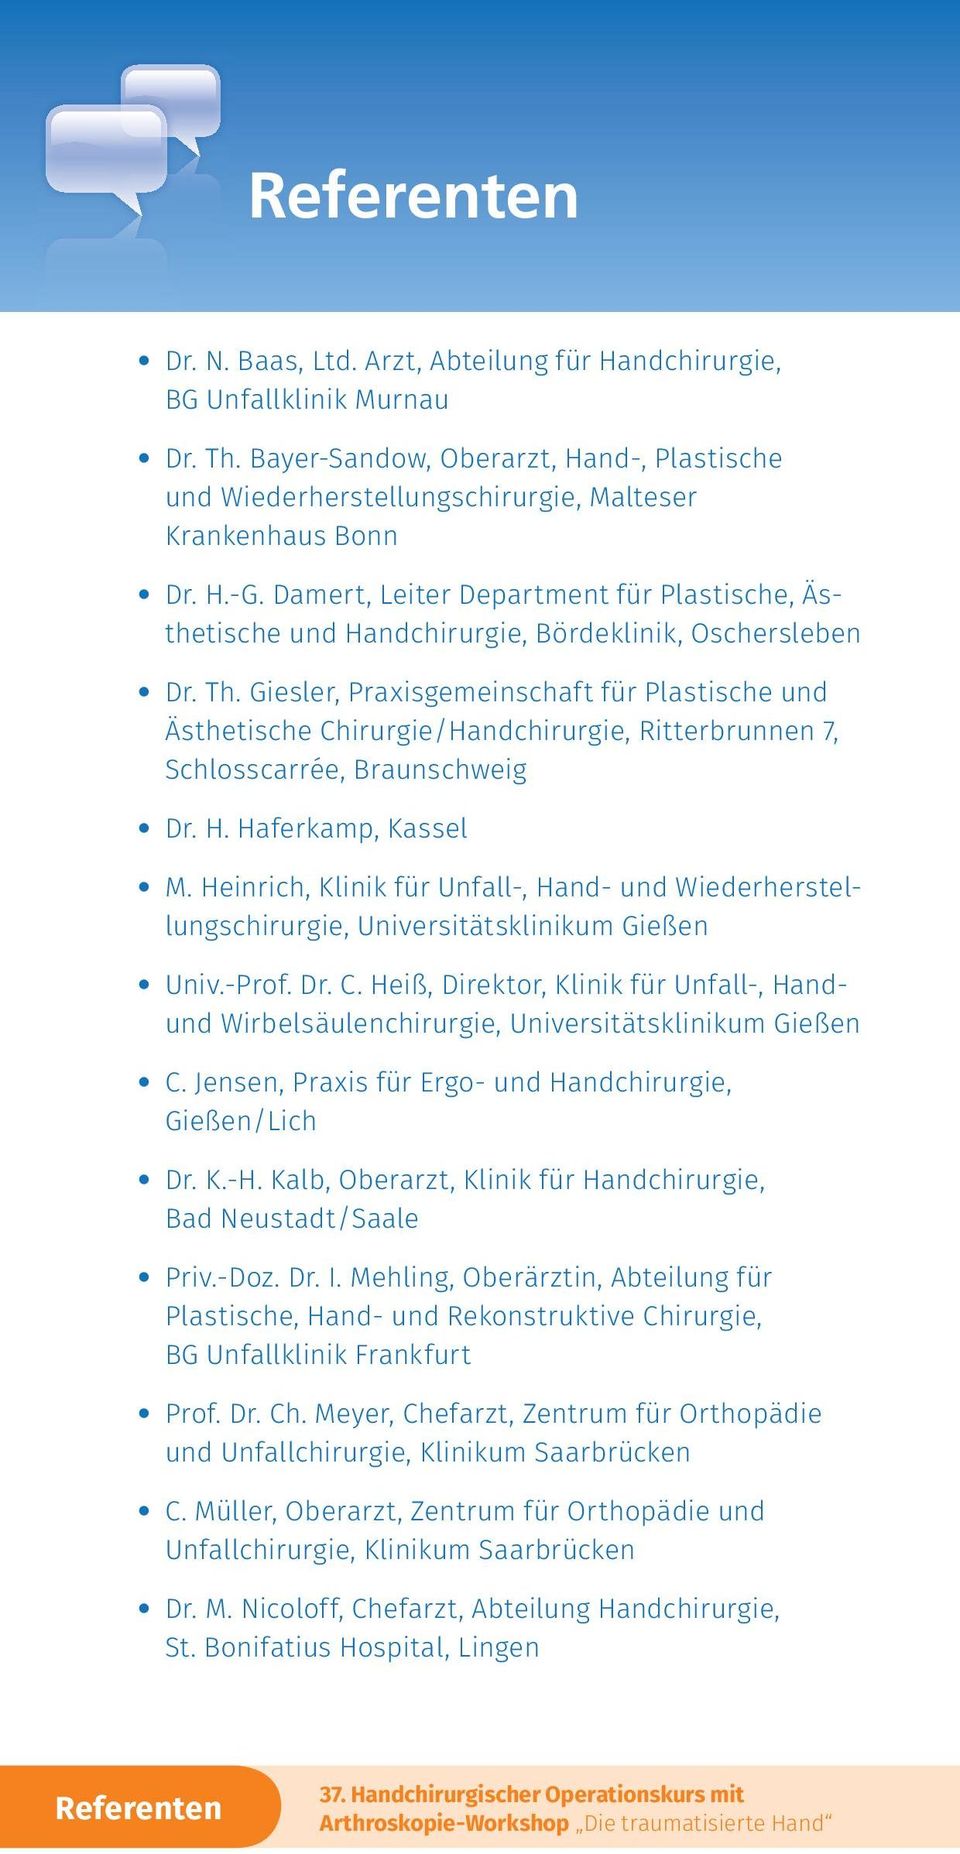 Giesler, Praxisgemeinschaft für Plastische und Ästhetische Chirurgie/Handchirurgie, Ritterbrunnen 7, Schlosscarrée, Braunschweig Dr. H. Haferkamp, Kassel M.